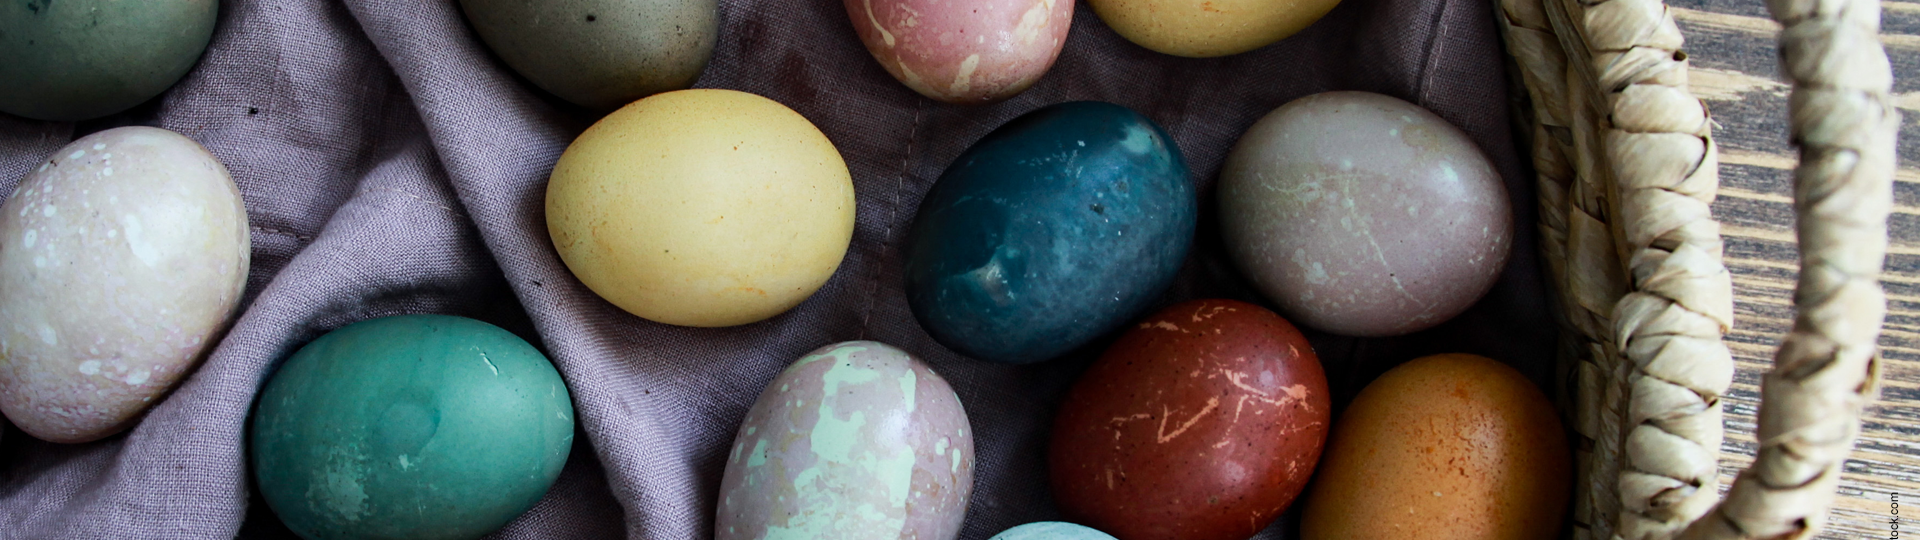 húsvéti tojásfestés természetes módon